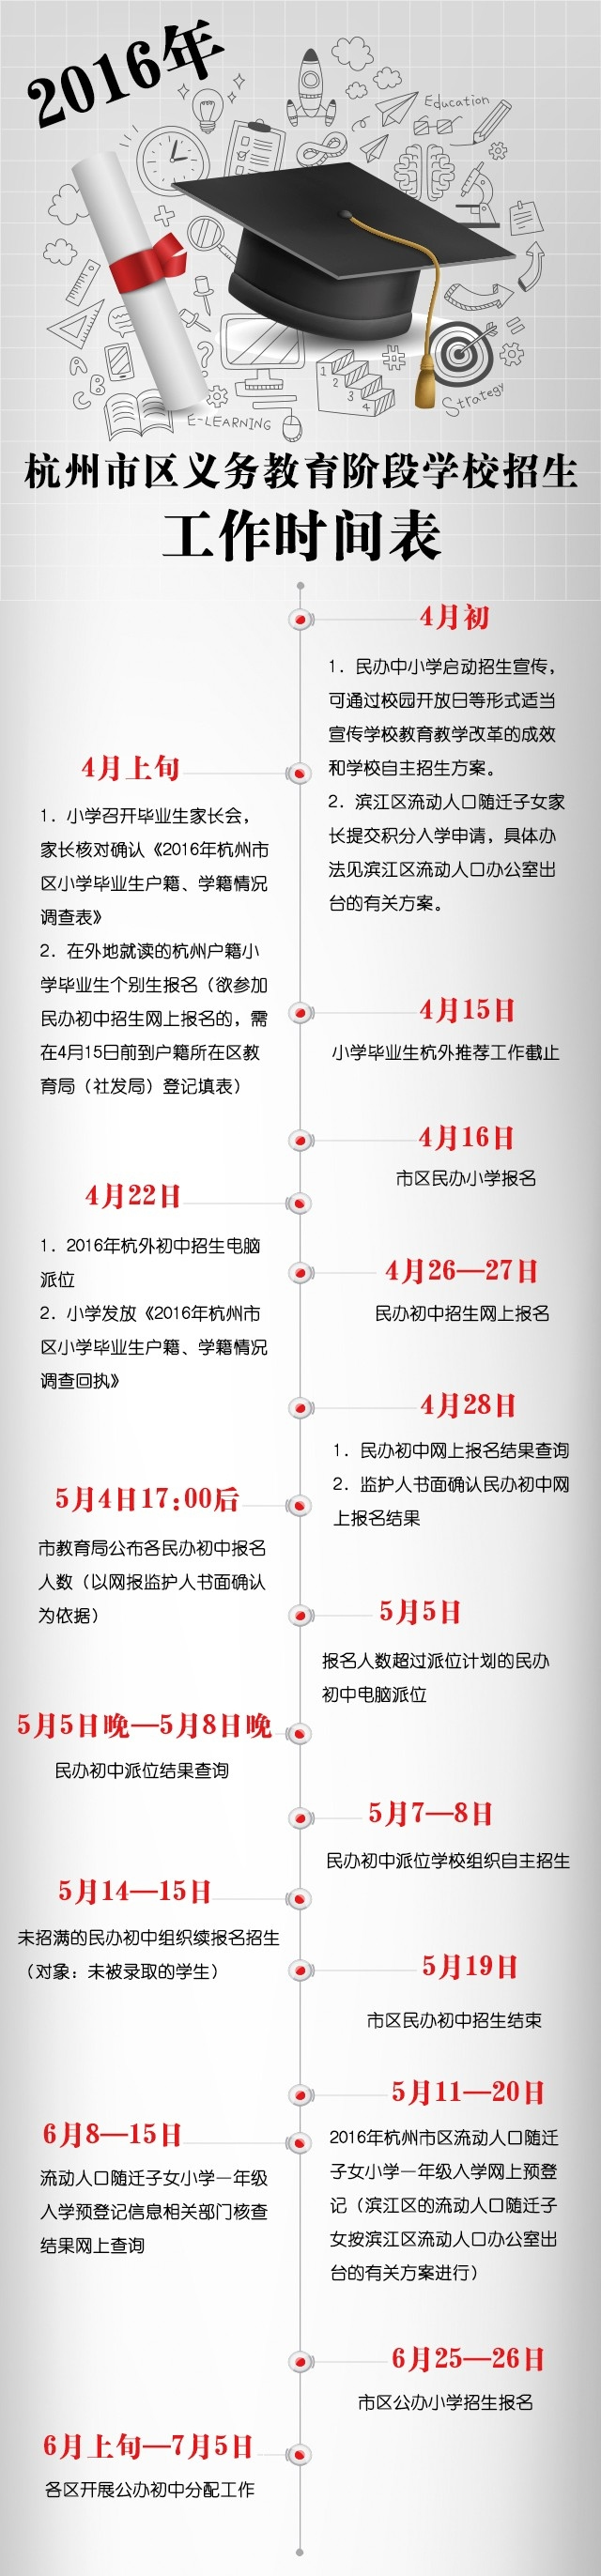 2016年杭州市小升初招生时间表图解